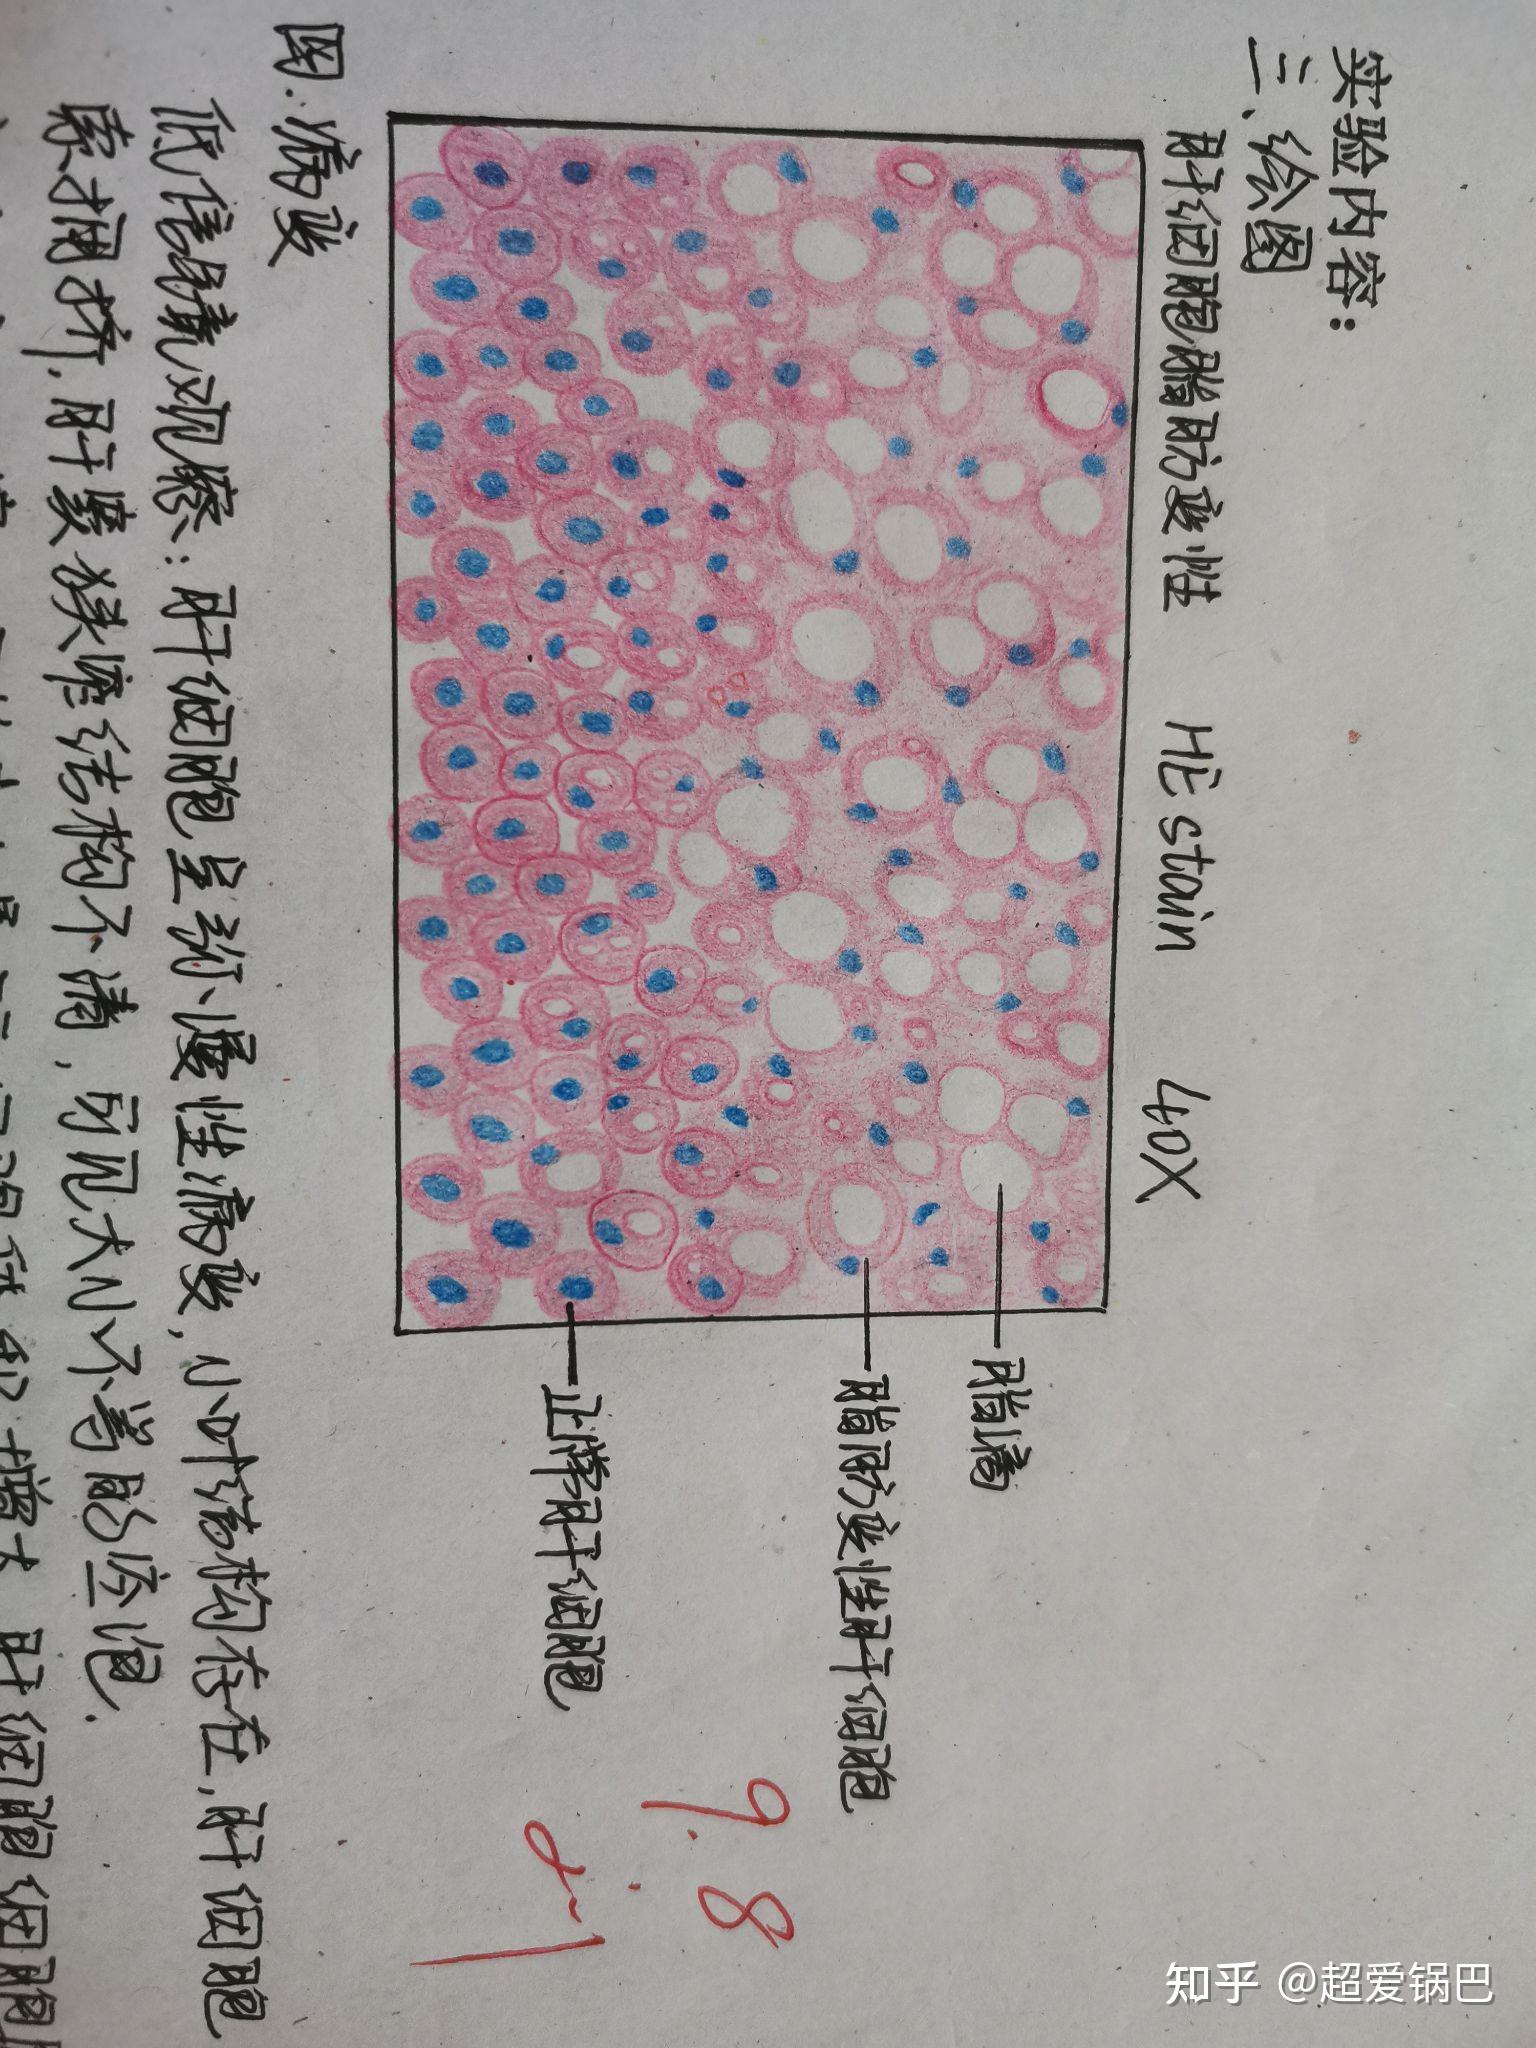 原始红细胞红蓝铅笔图图片